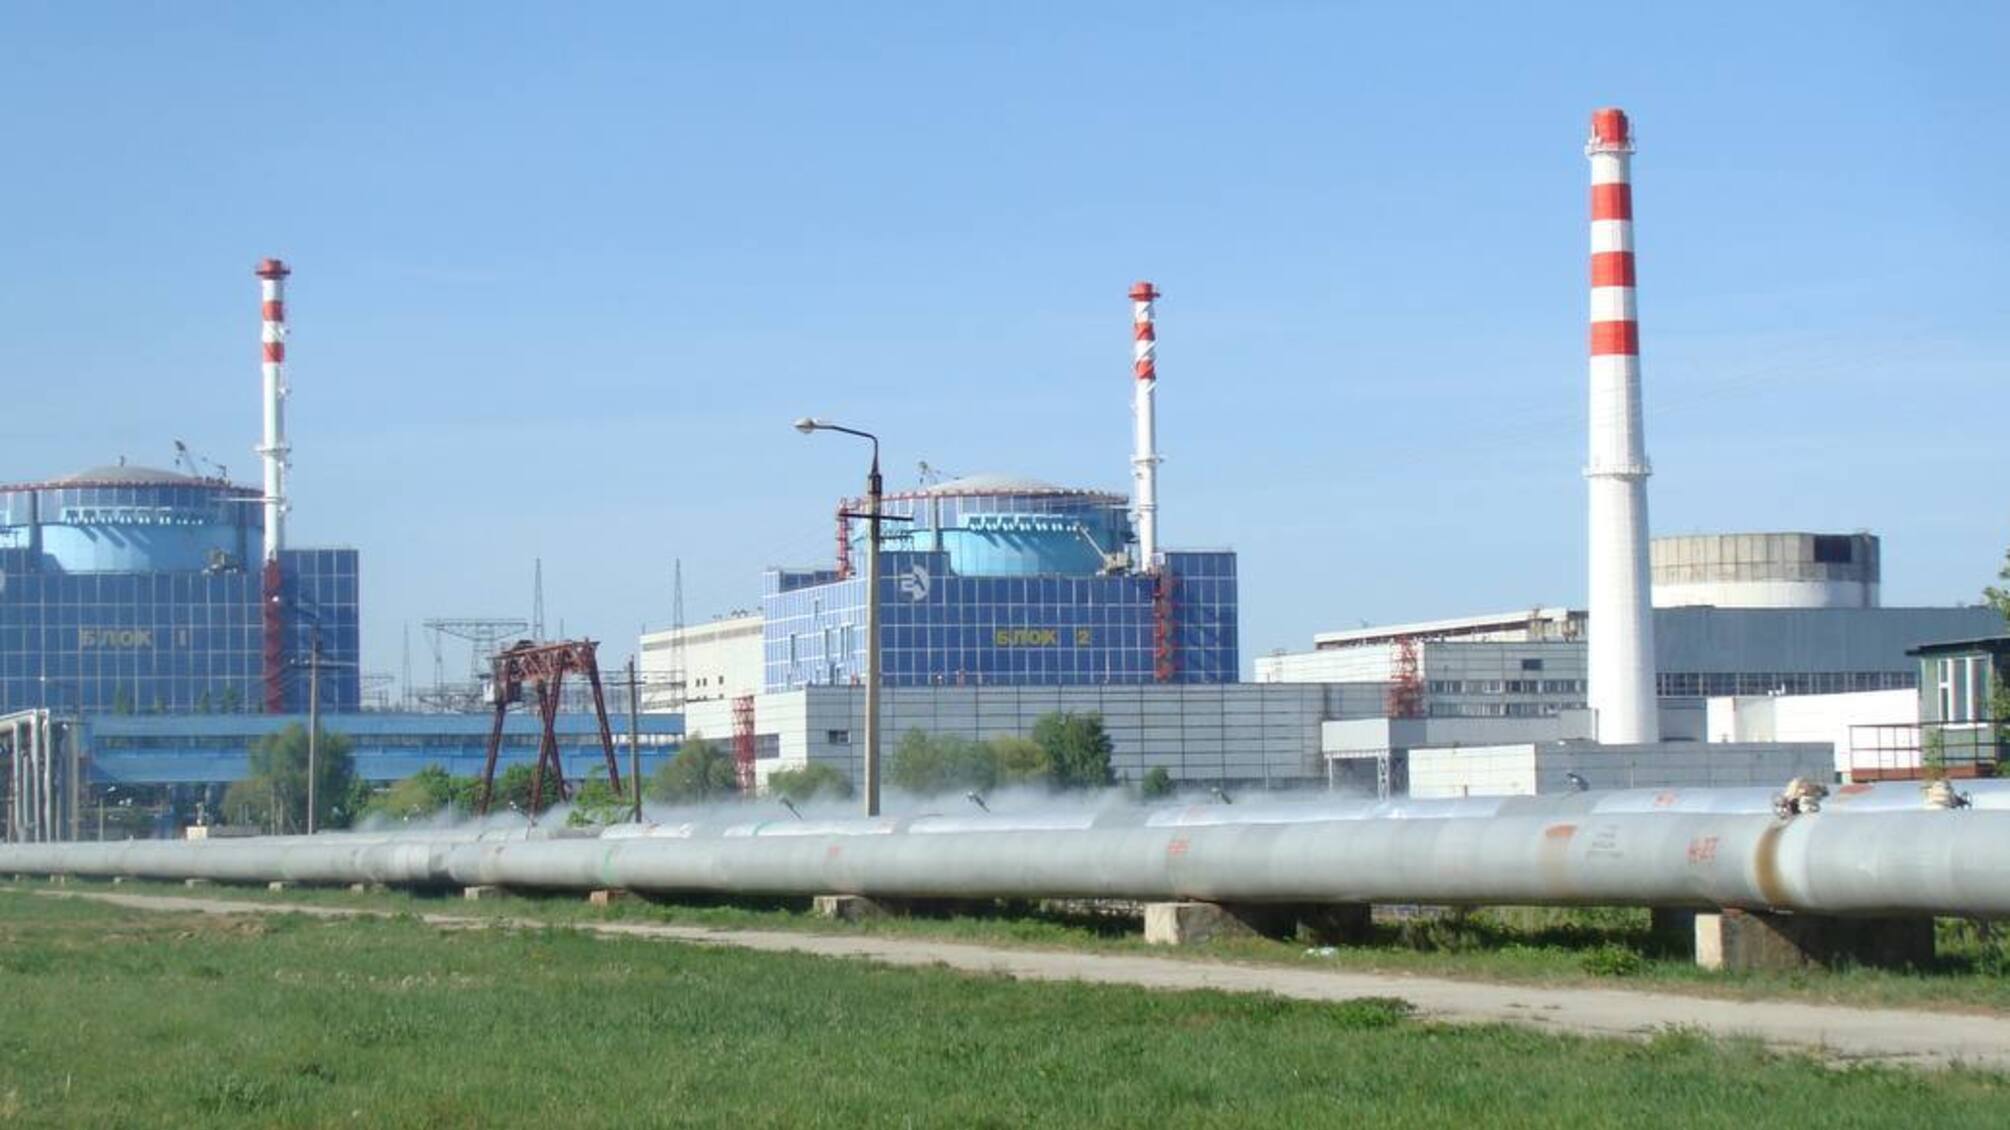 Хмельницька АЕС стане найпотужнішою в Європі після будівництва нових 4 блоків, — міністр енергетики Галущенко